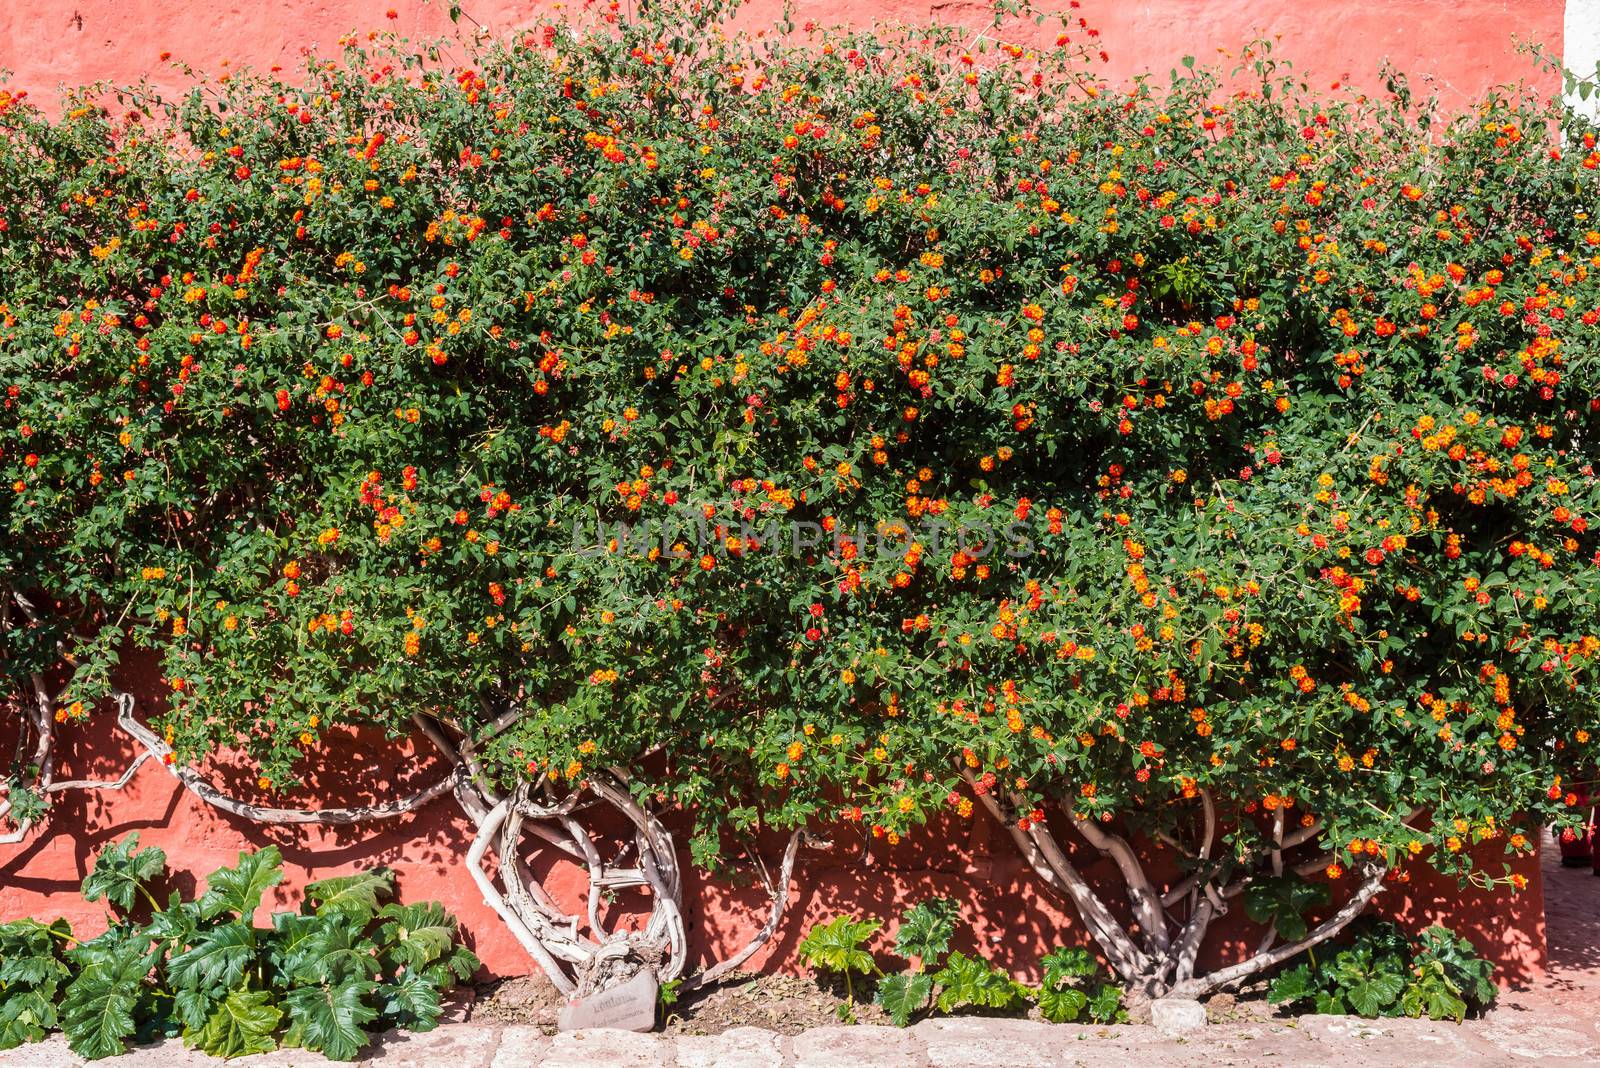 Lantana bush inside Santa Catalina monastery Arequipa Peru by PIXSTILL